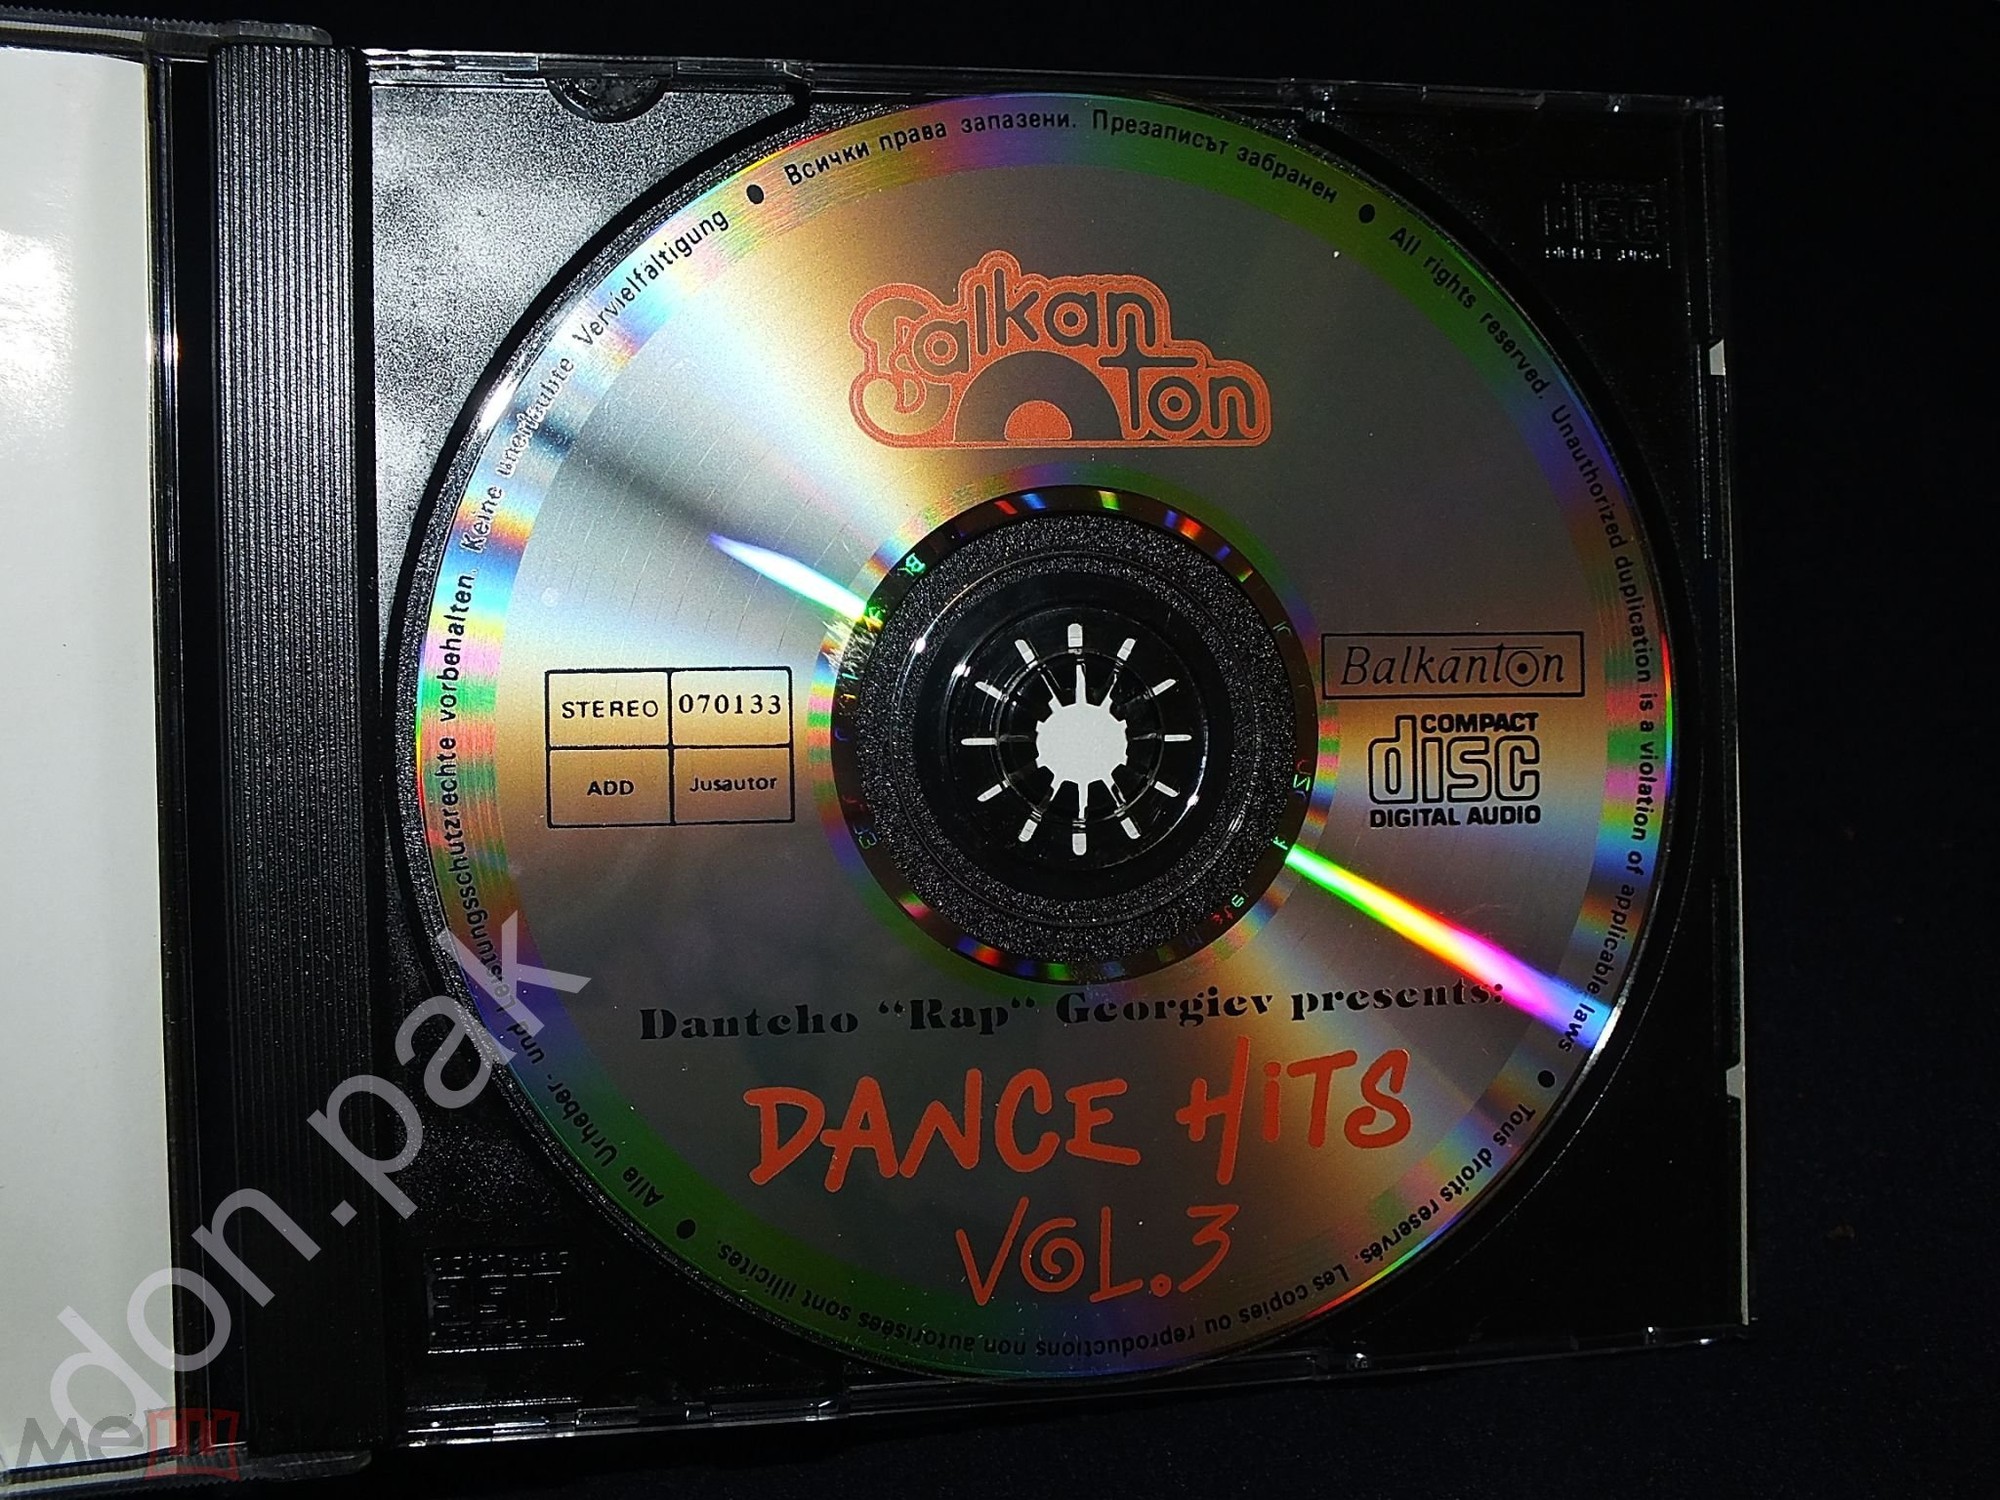 Dantcho "Rap" Georgiev presents: Dance Hits Vol. 3